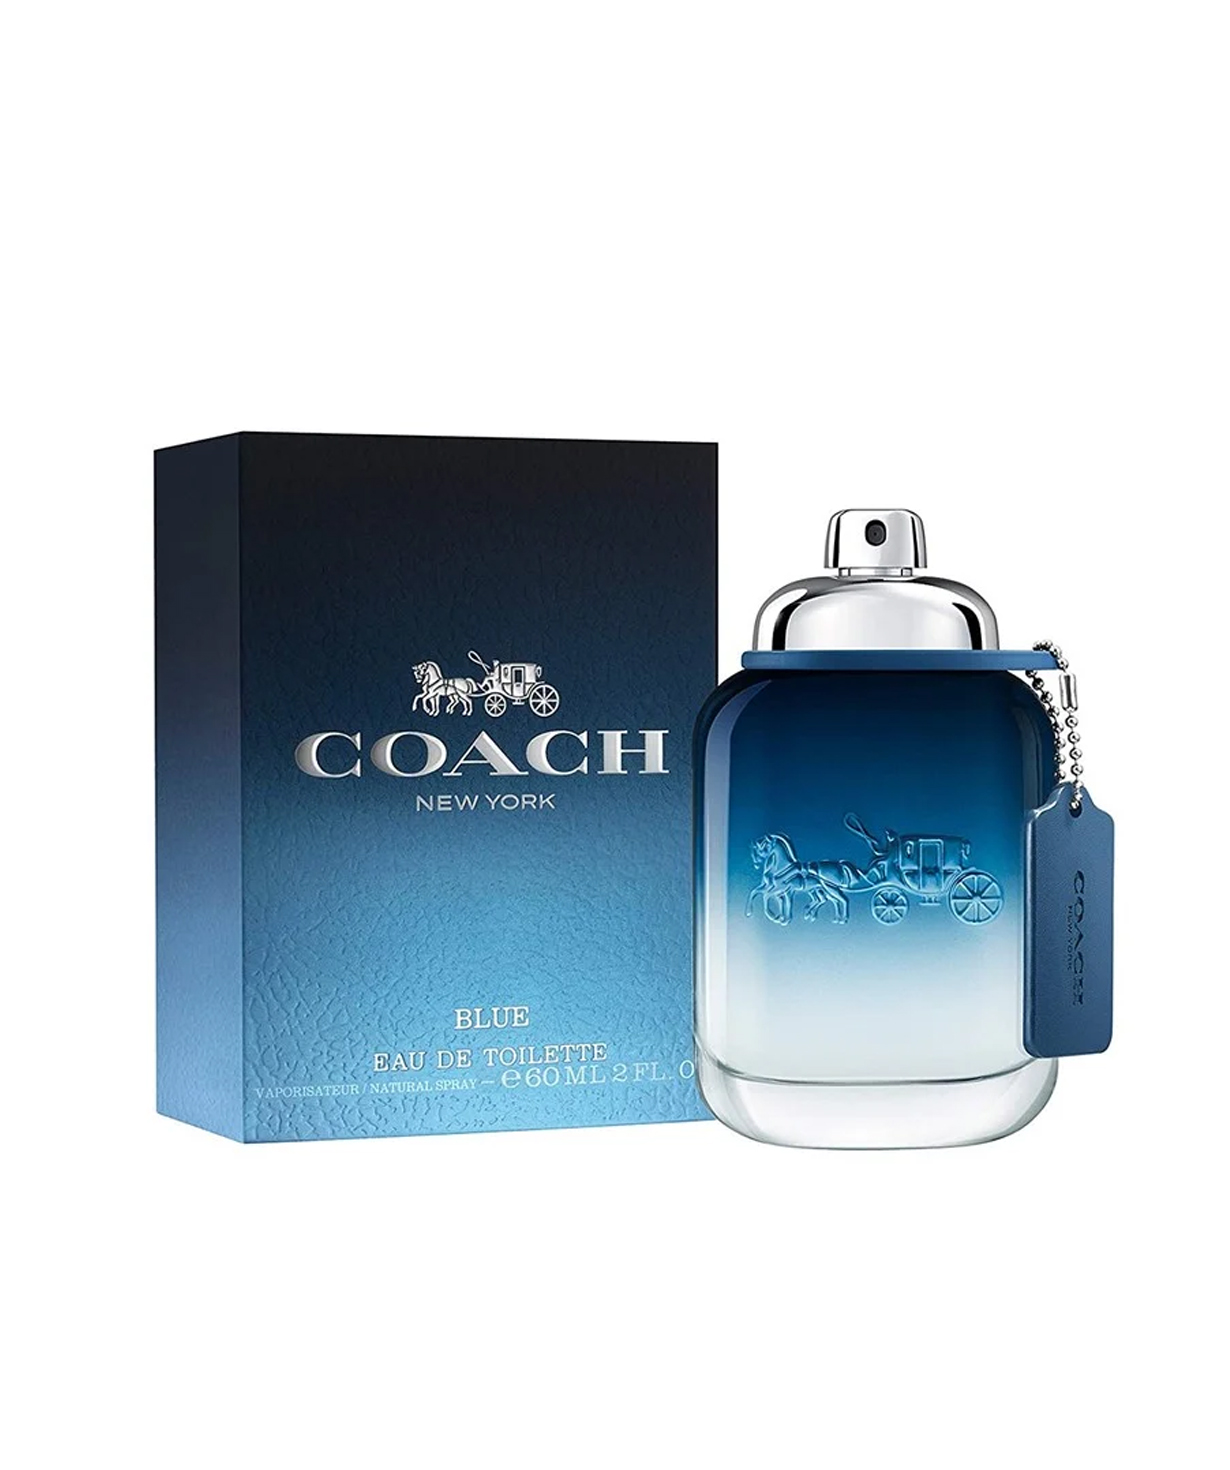 Perfume «Coach» Blue, for men, 60 ml